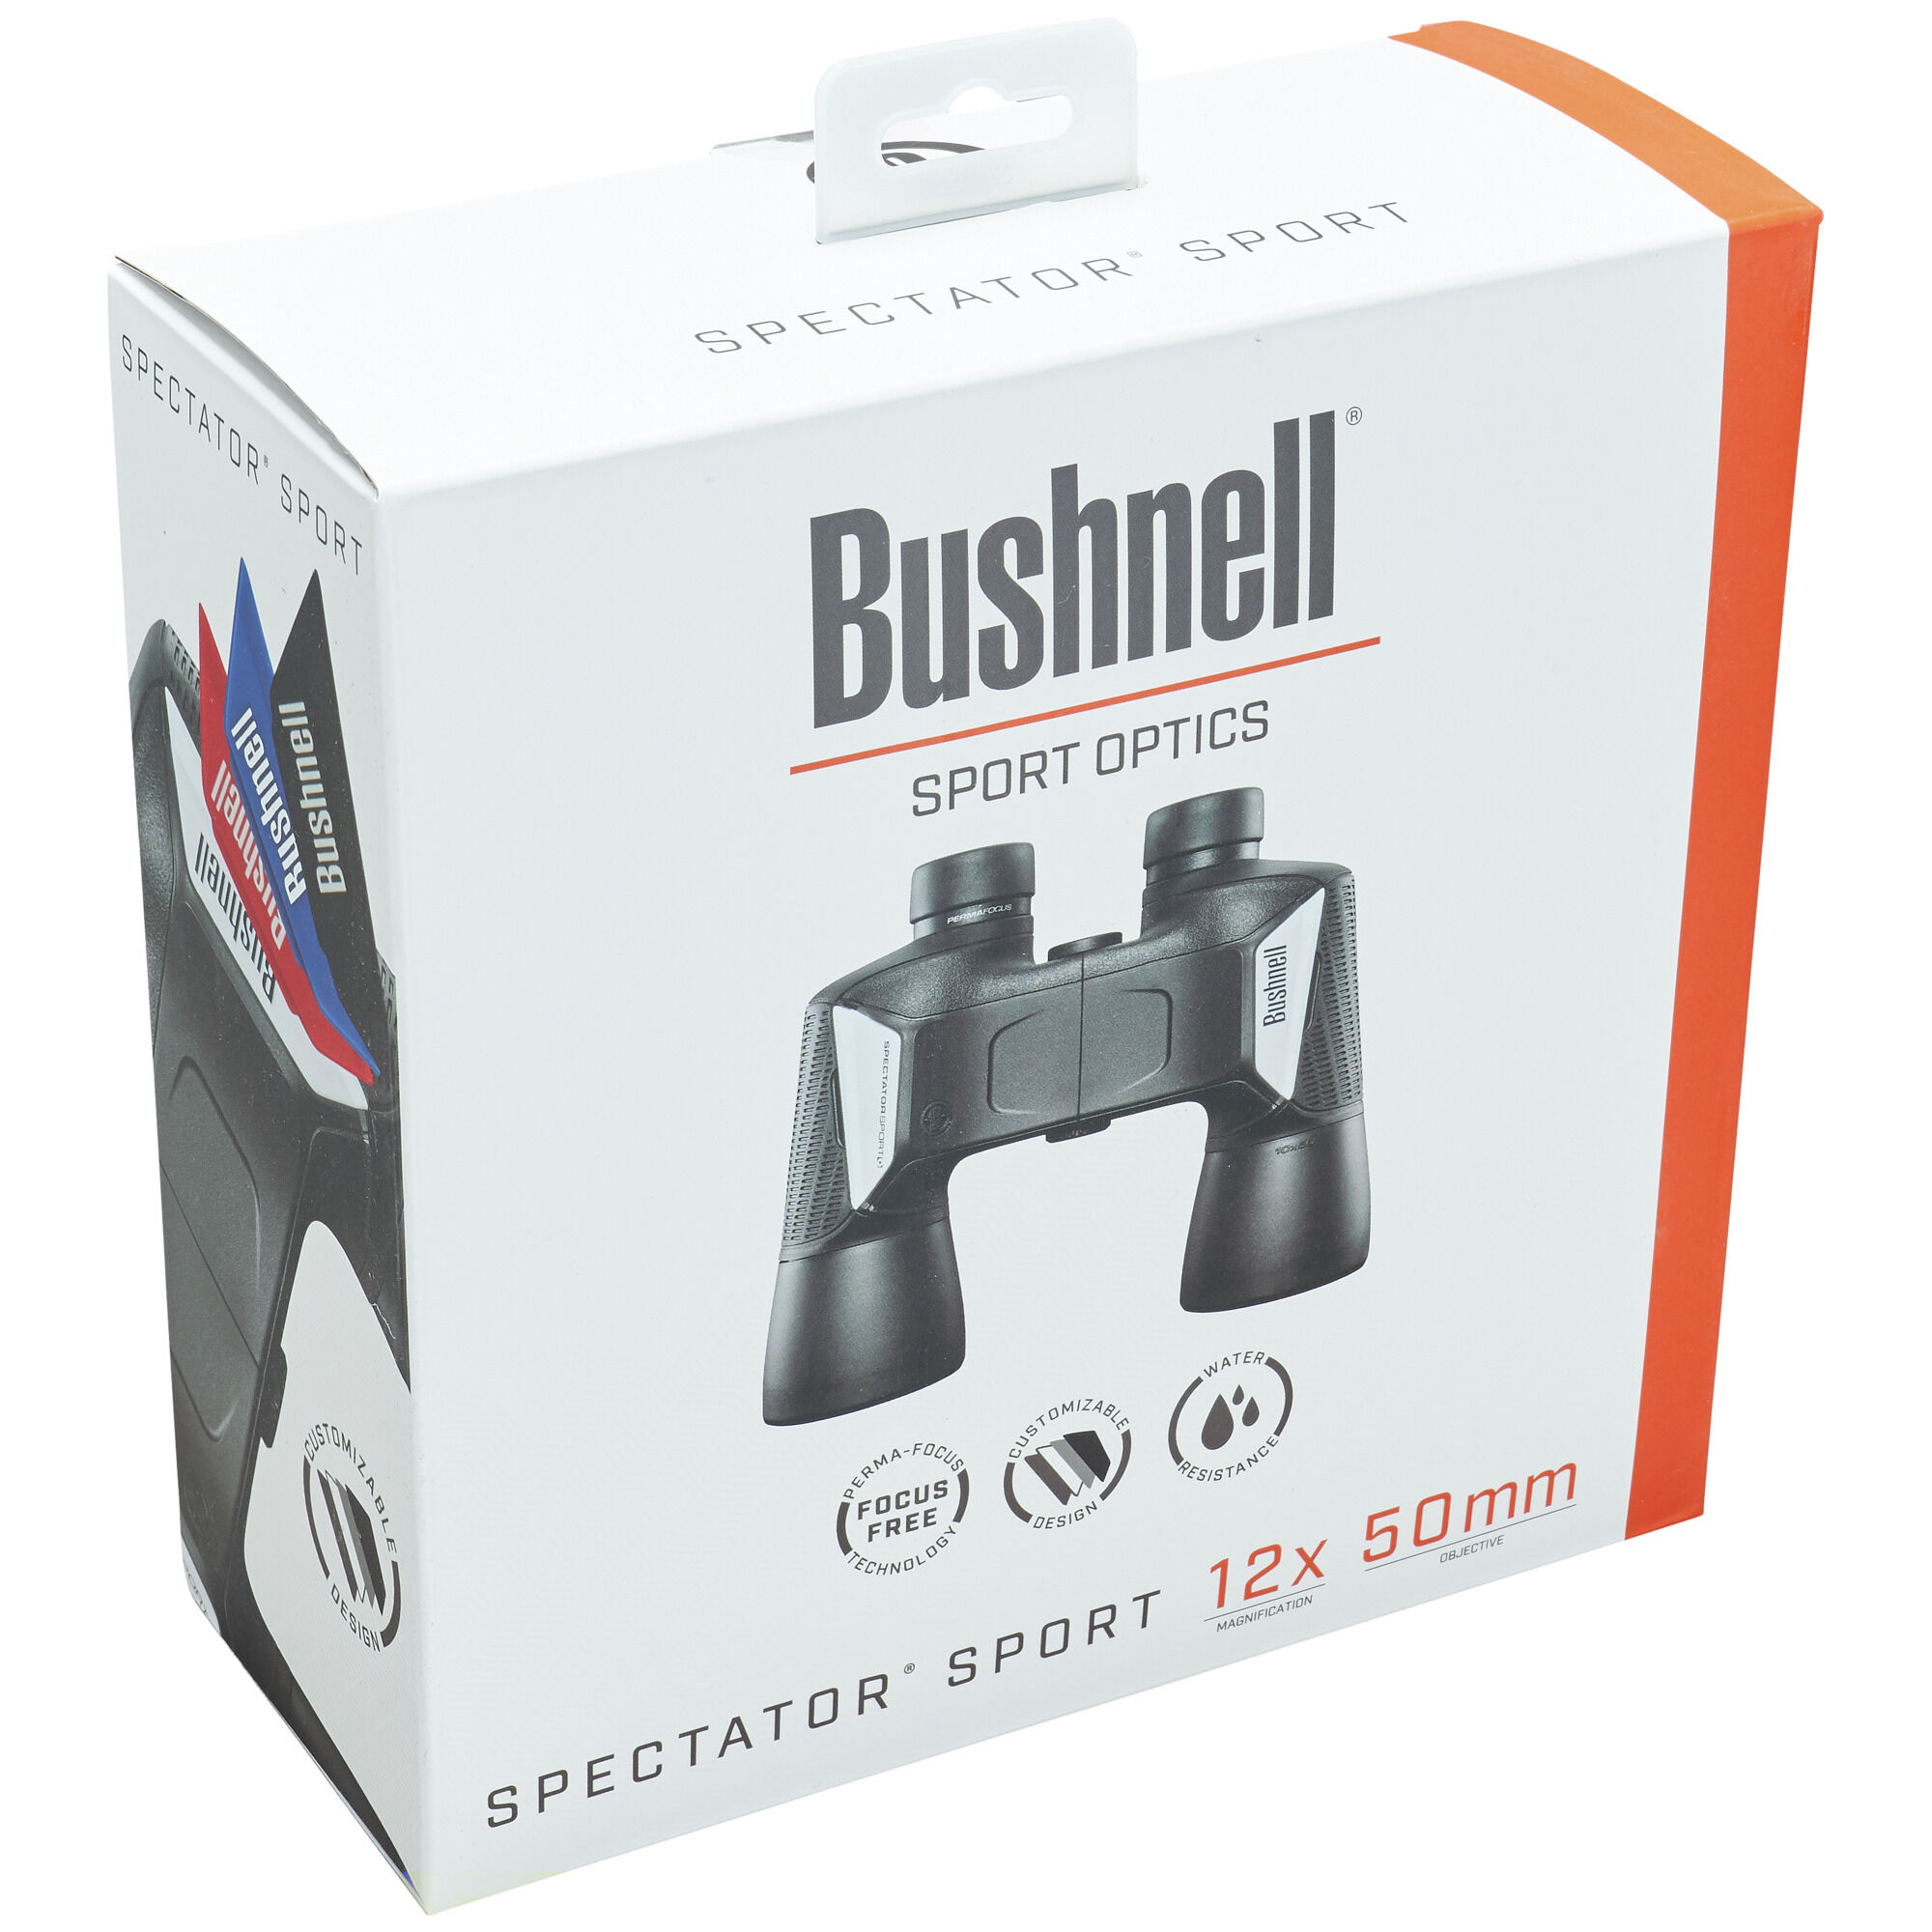 品)Bushnell防水Spectatorスポーツ双眼、12?x 50?mm、ブラック-